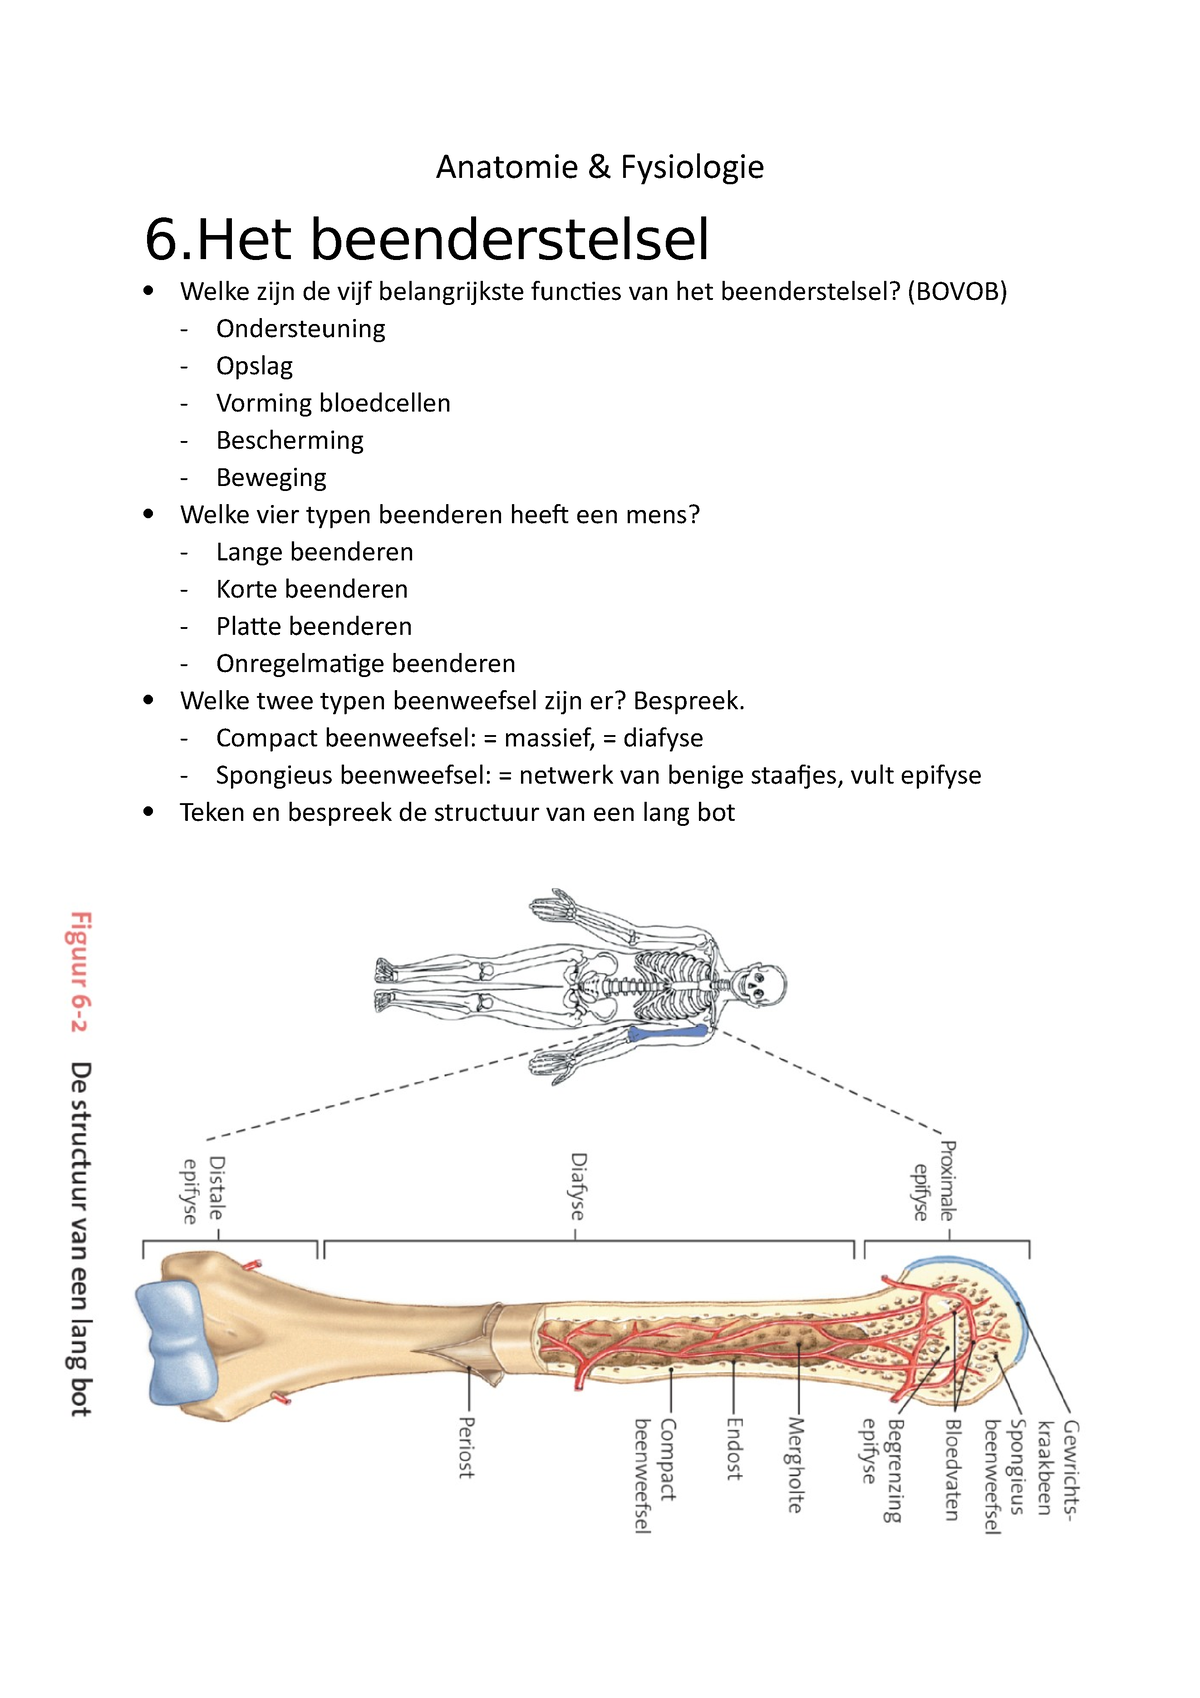 Sv Anatomie And Fysiologie Anatomie And Fysiologie 6 Beenderstelsel Welke